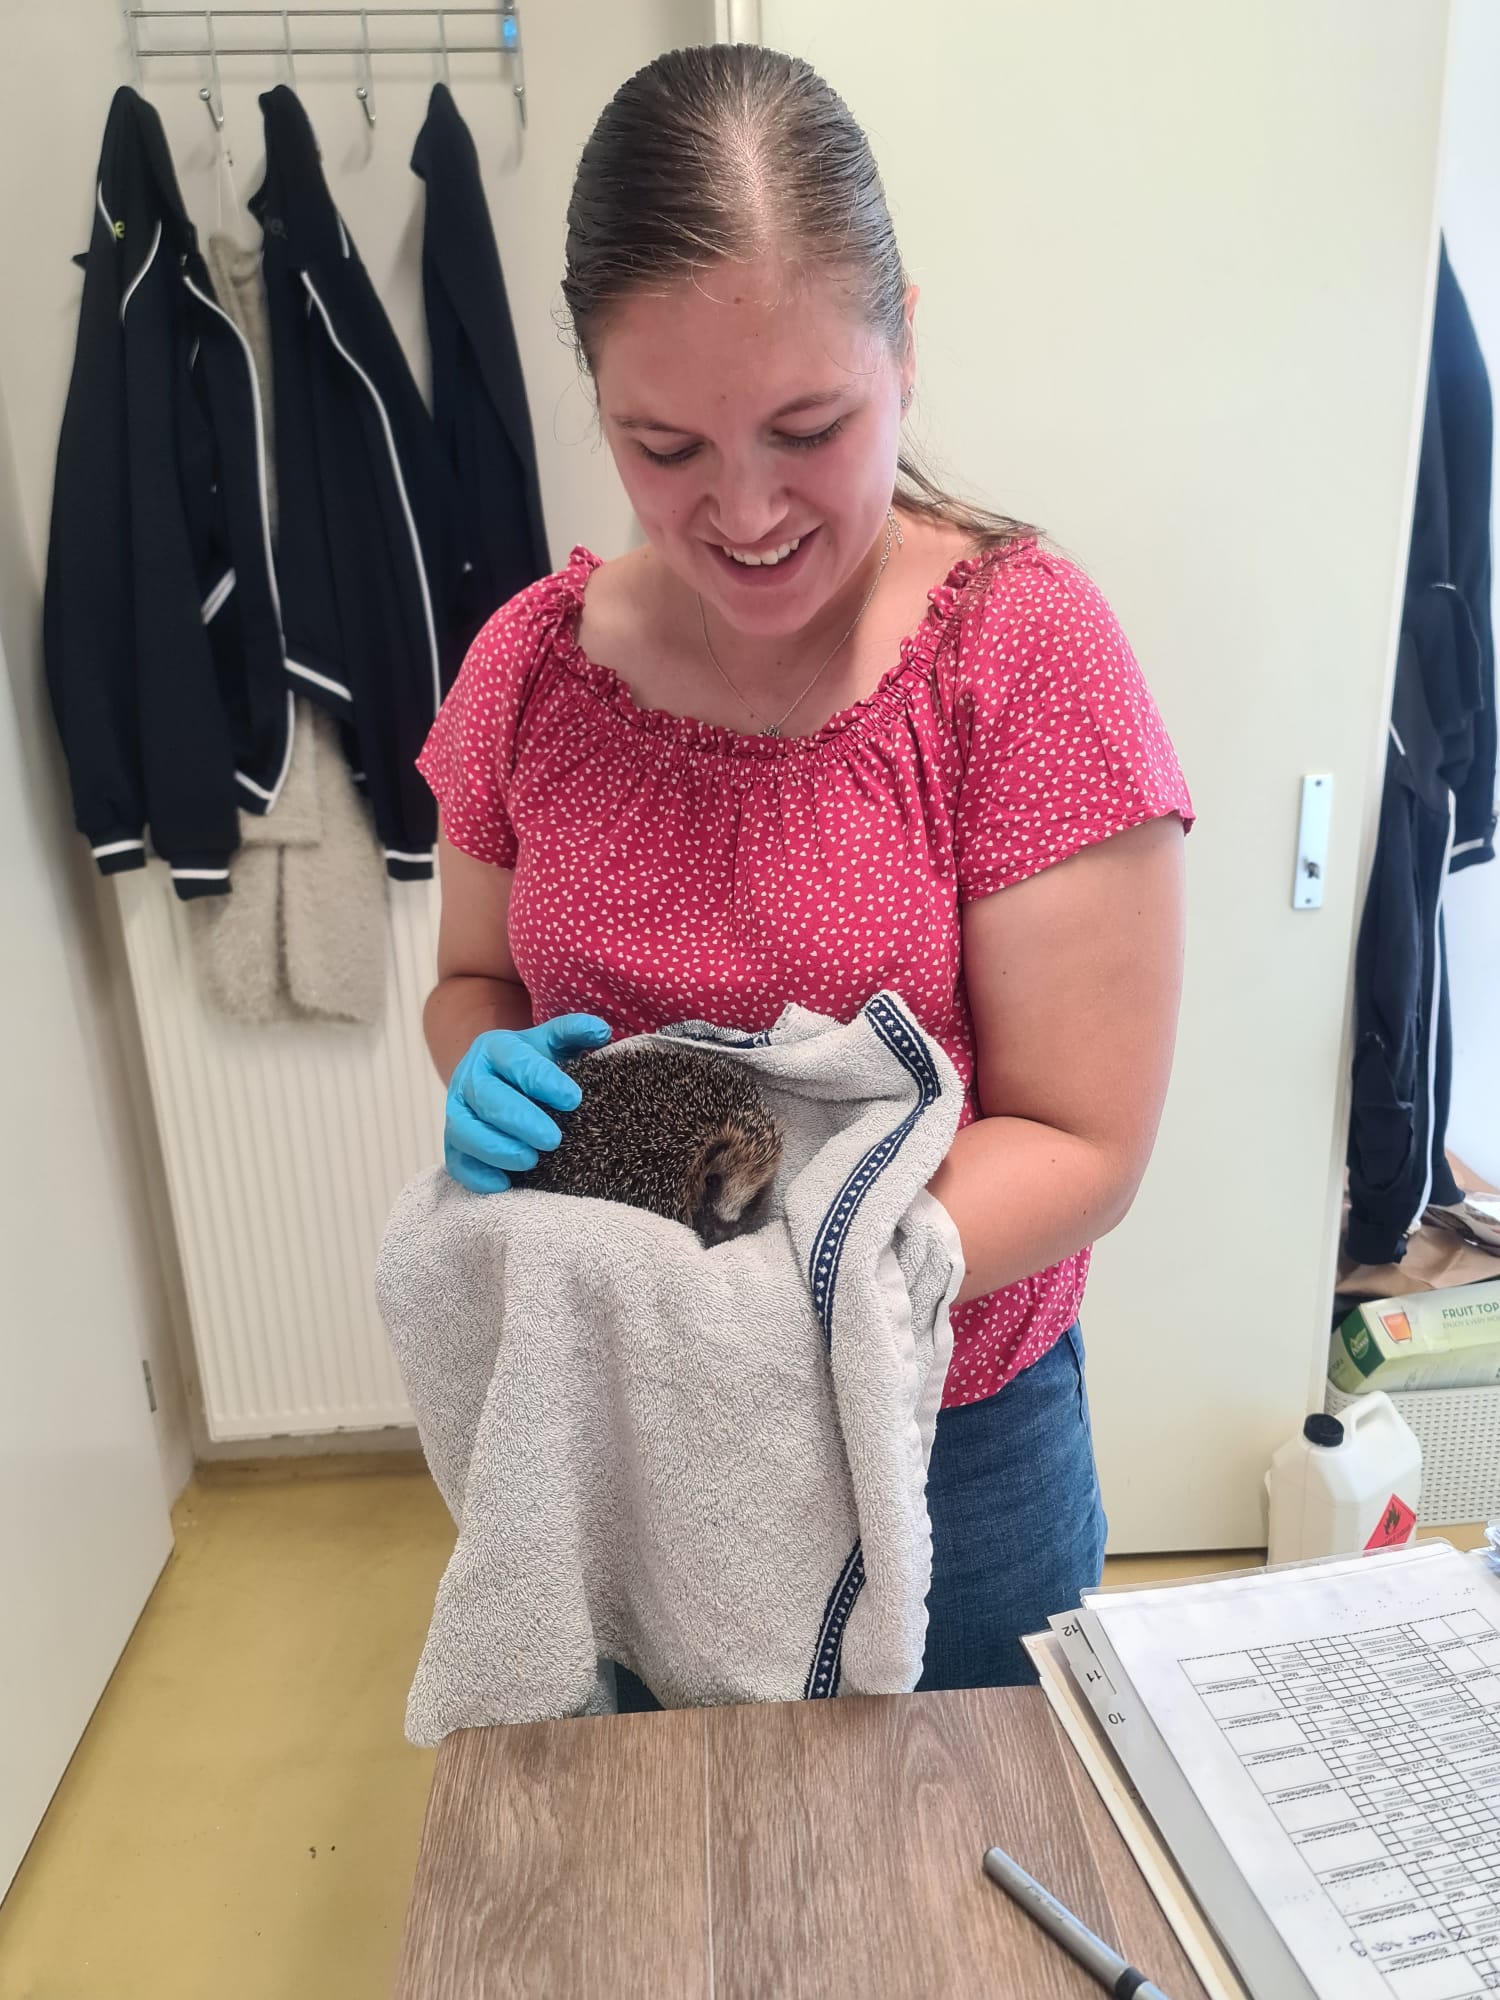 Afbeelding toont onderzoeker Fabiënne Claassens met een egel in haar handen